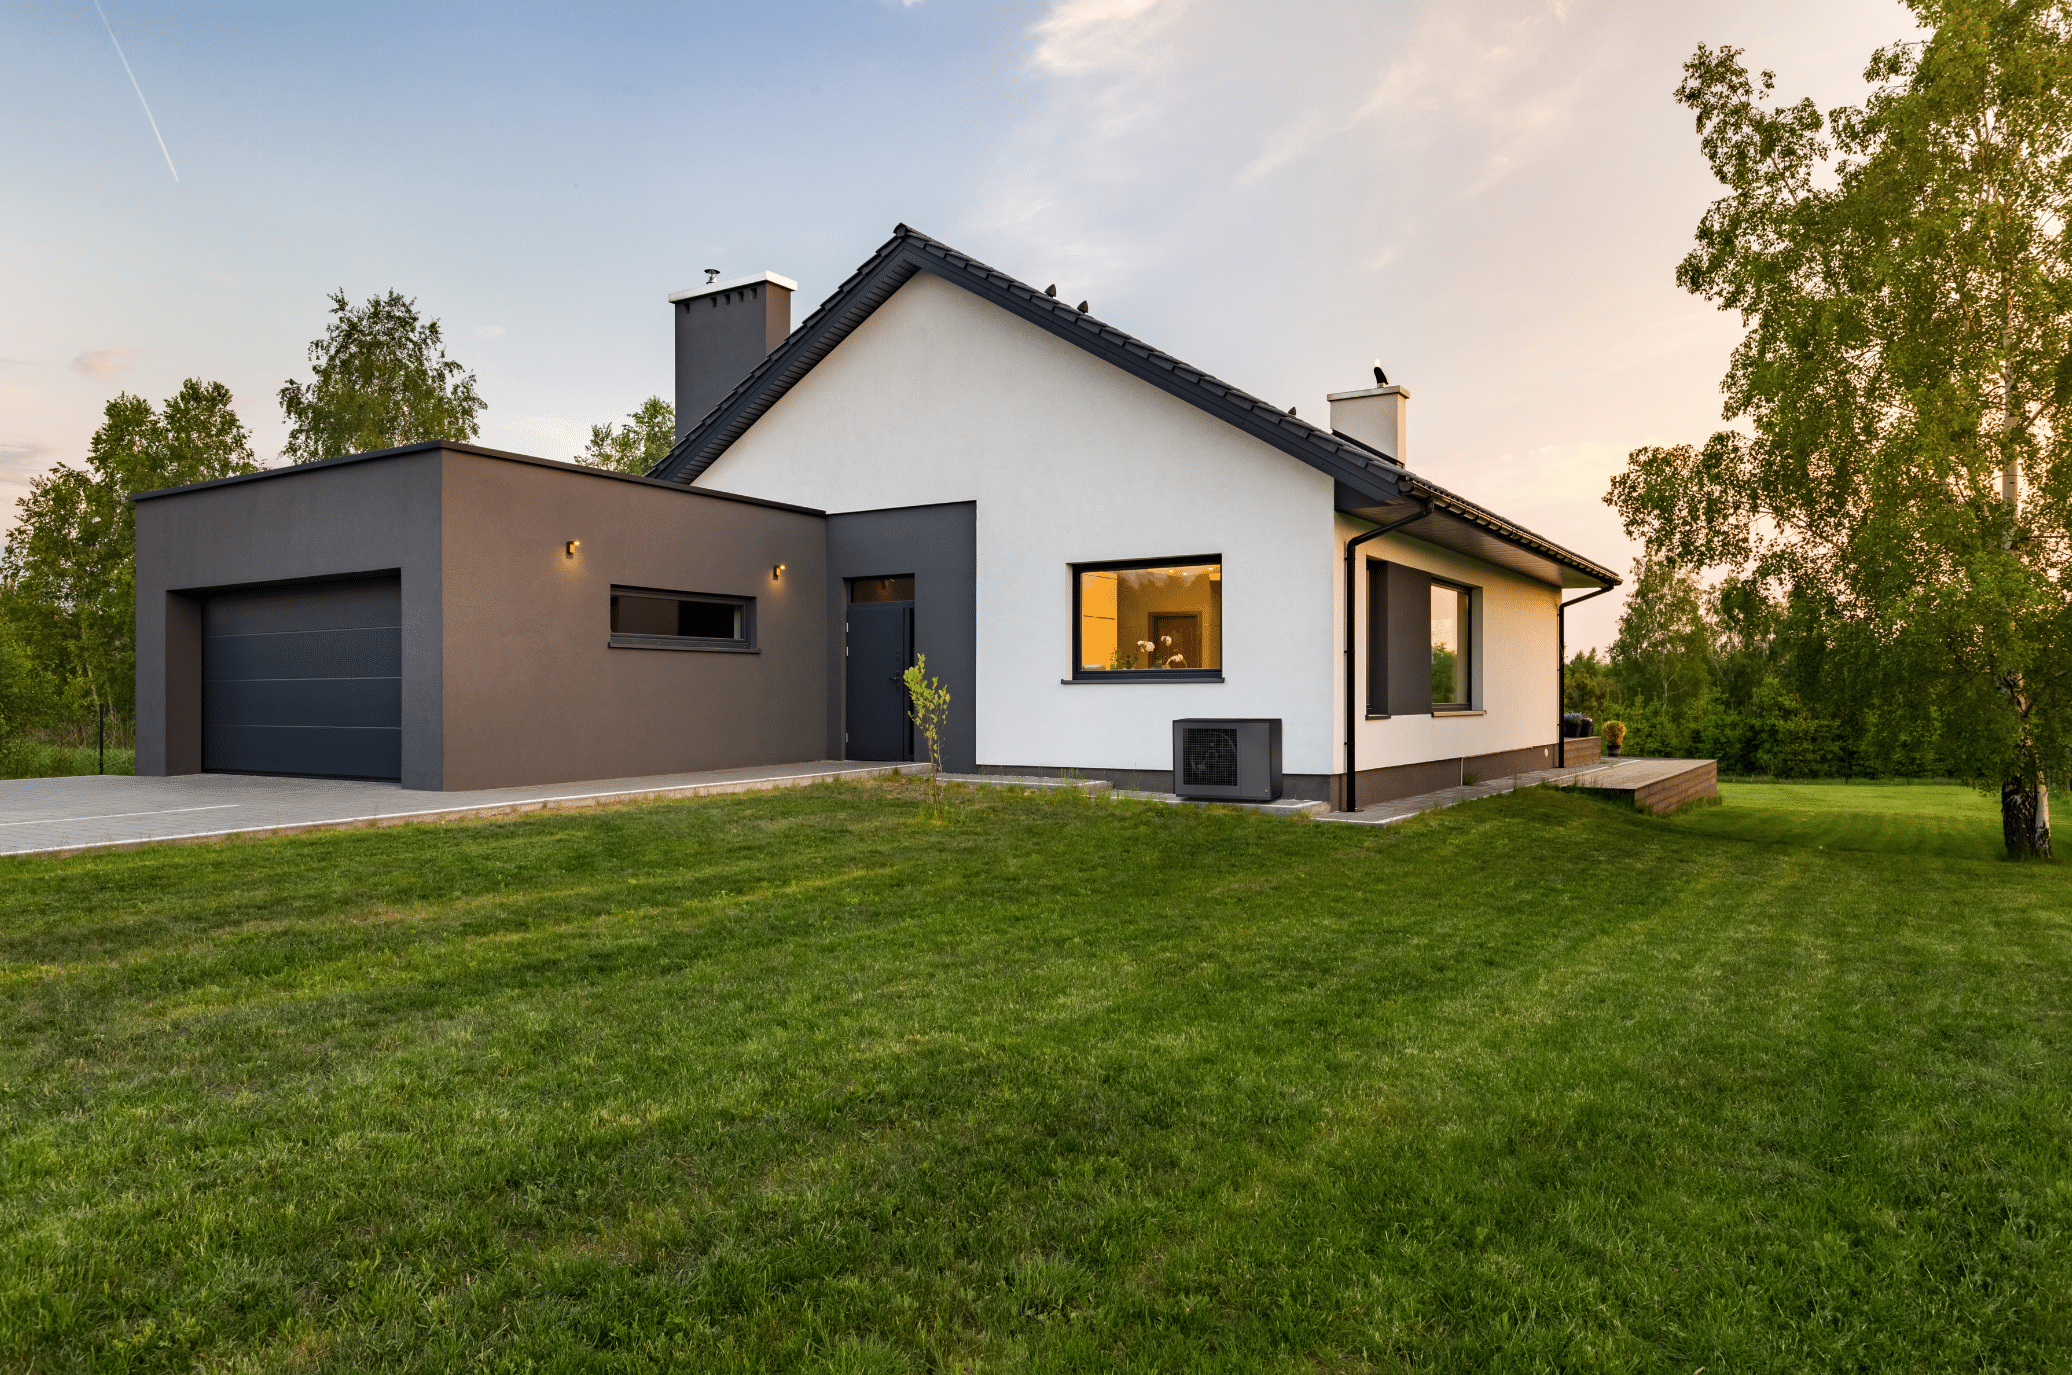 Dimplex zeigt ein Einfamilienhaus mit angebauter Garage, einem schwarzem Garagentor und einer außen angebrachten, schwarzen Wärmepumpe zum Temperieren des Hauses.